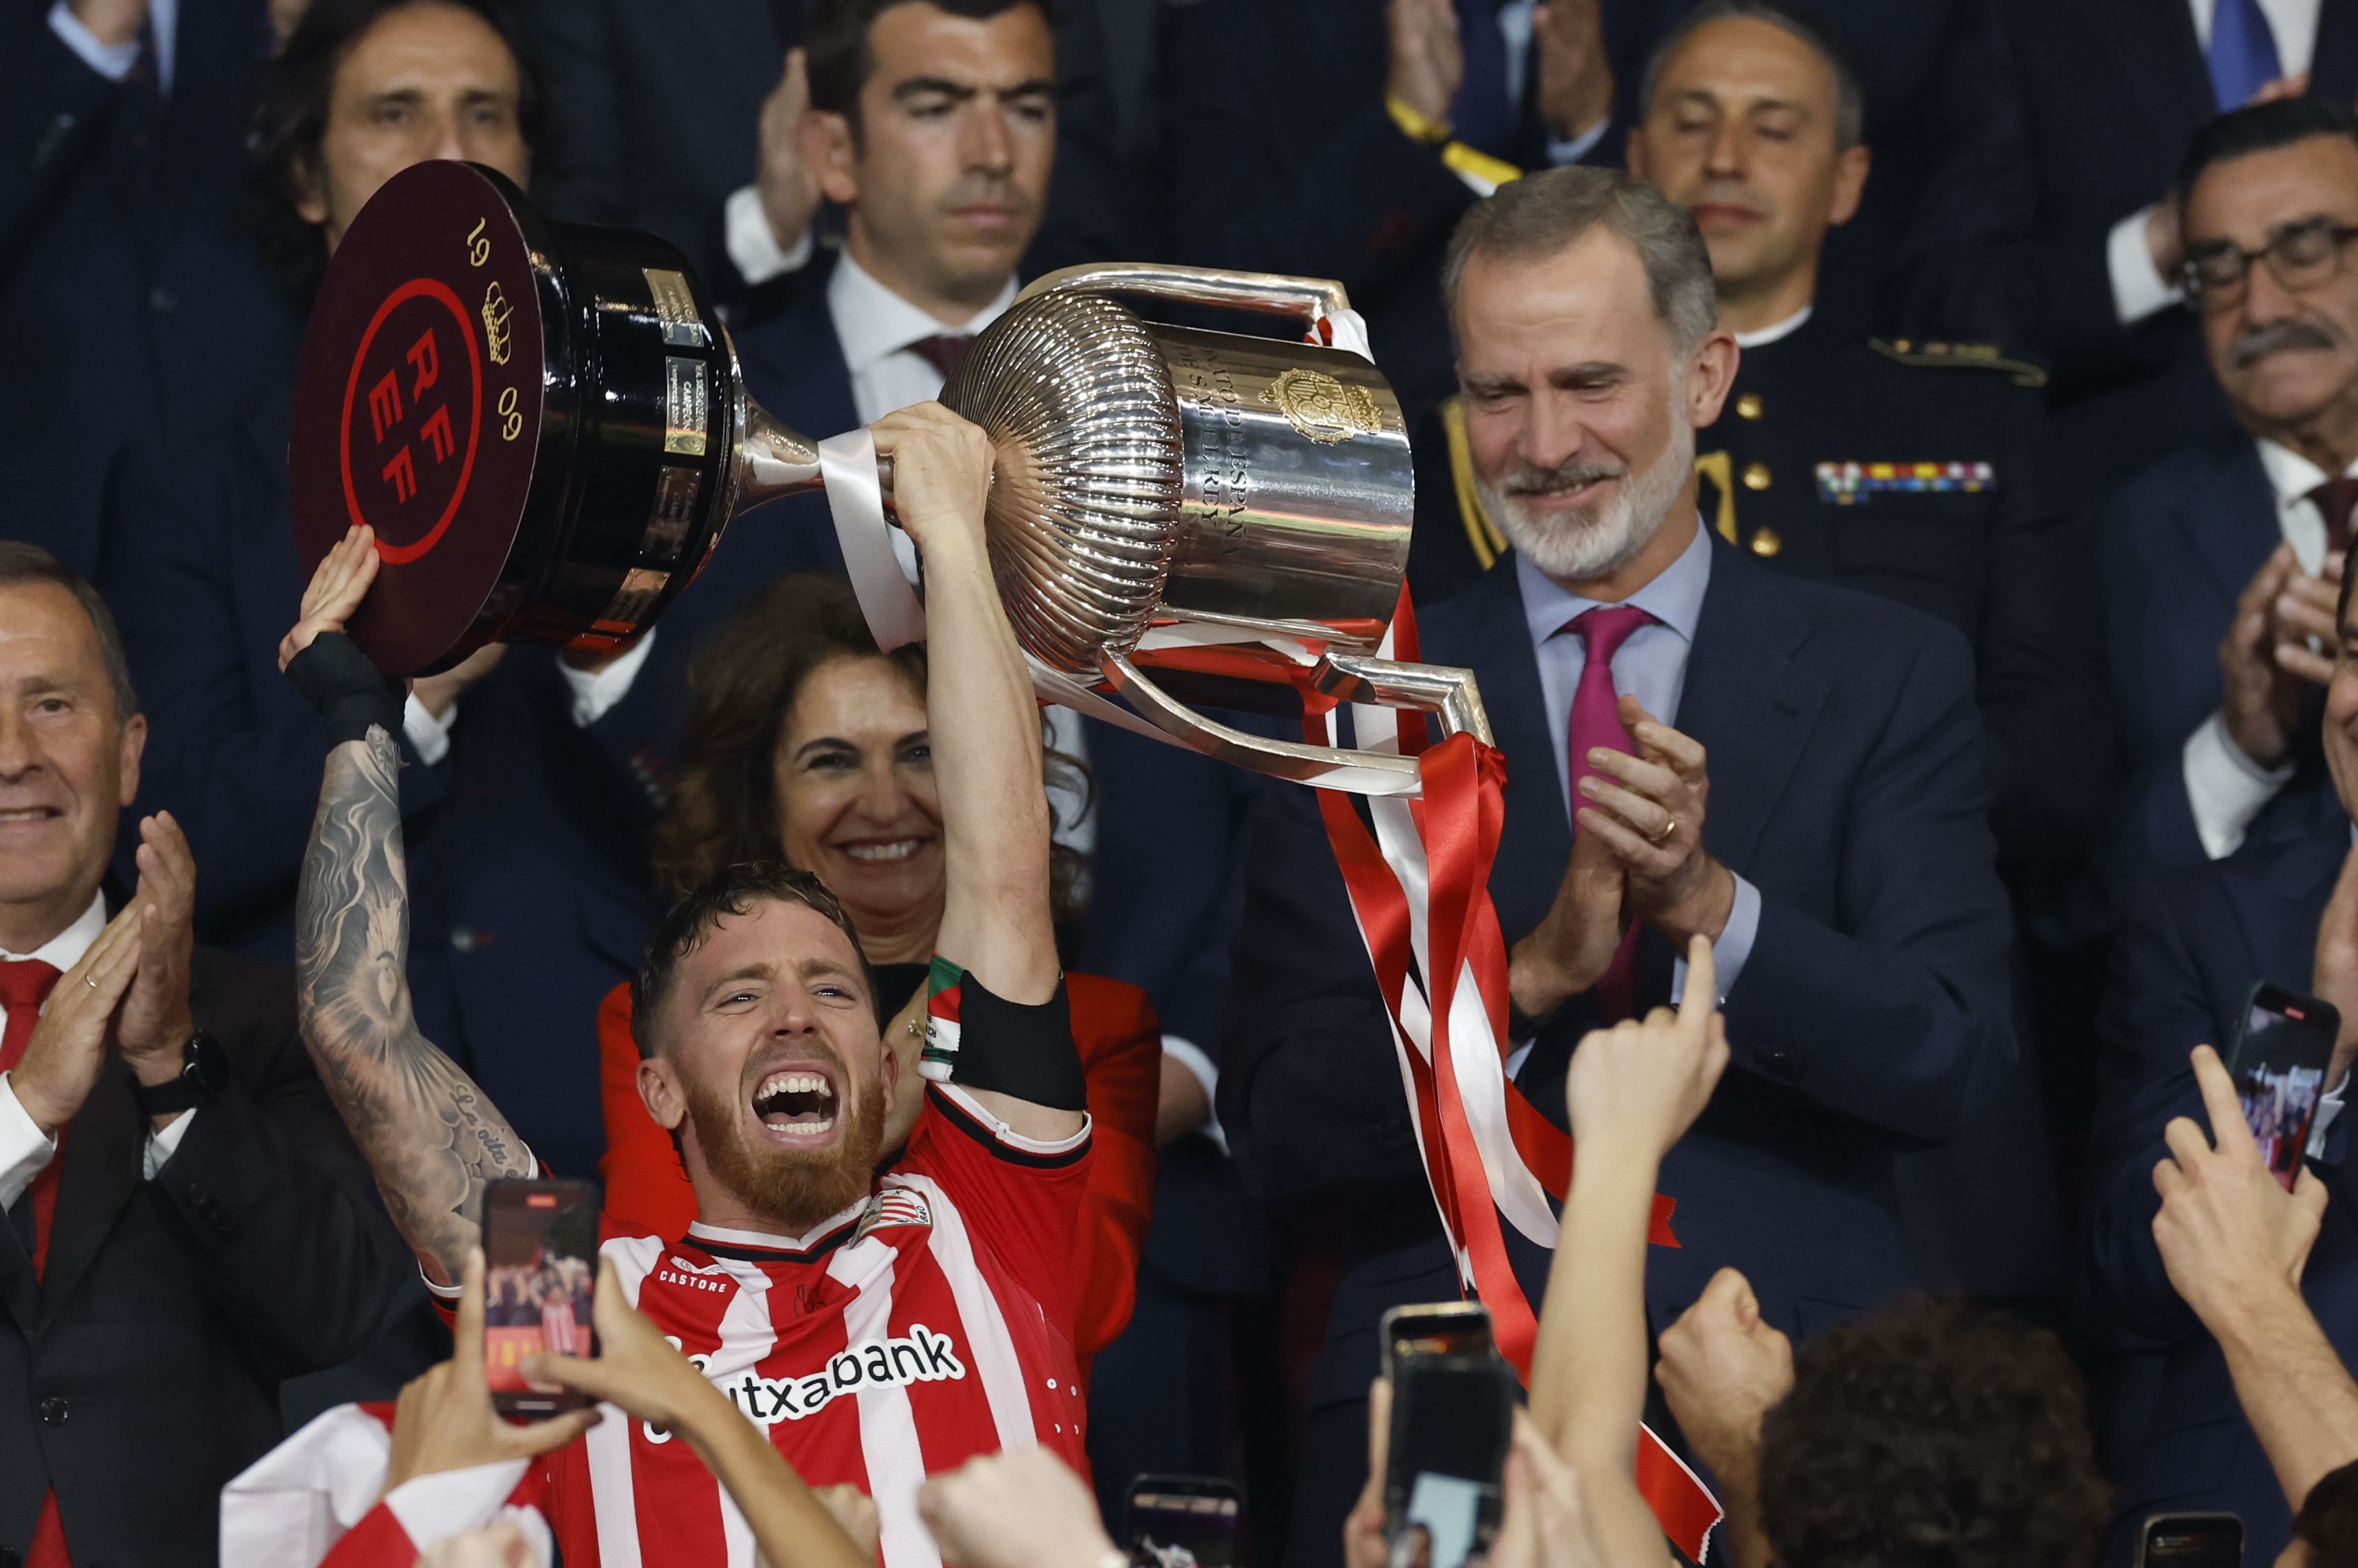 El capitán del Athletic Club, Iker Muniaim, levanta el trofeo que les acredita campeones de la Copa del Rey. (EFE / Julio Muñoz) 